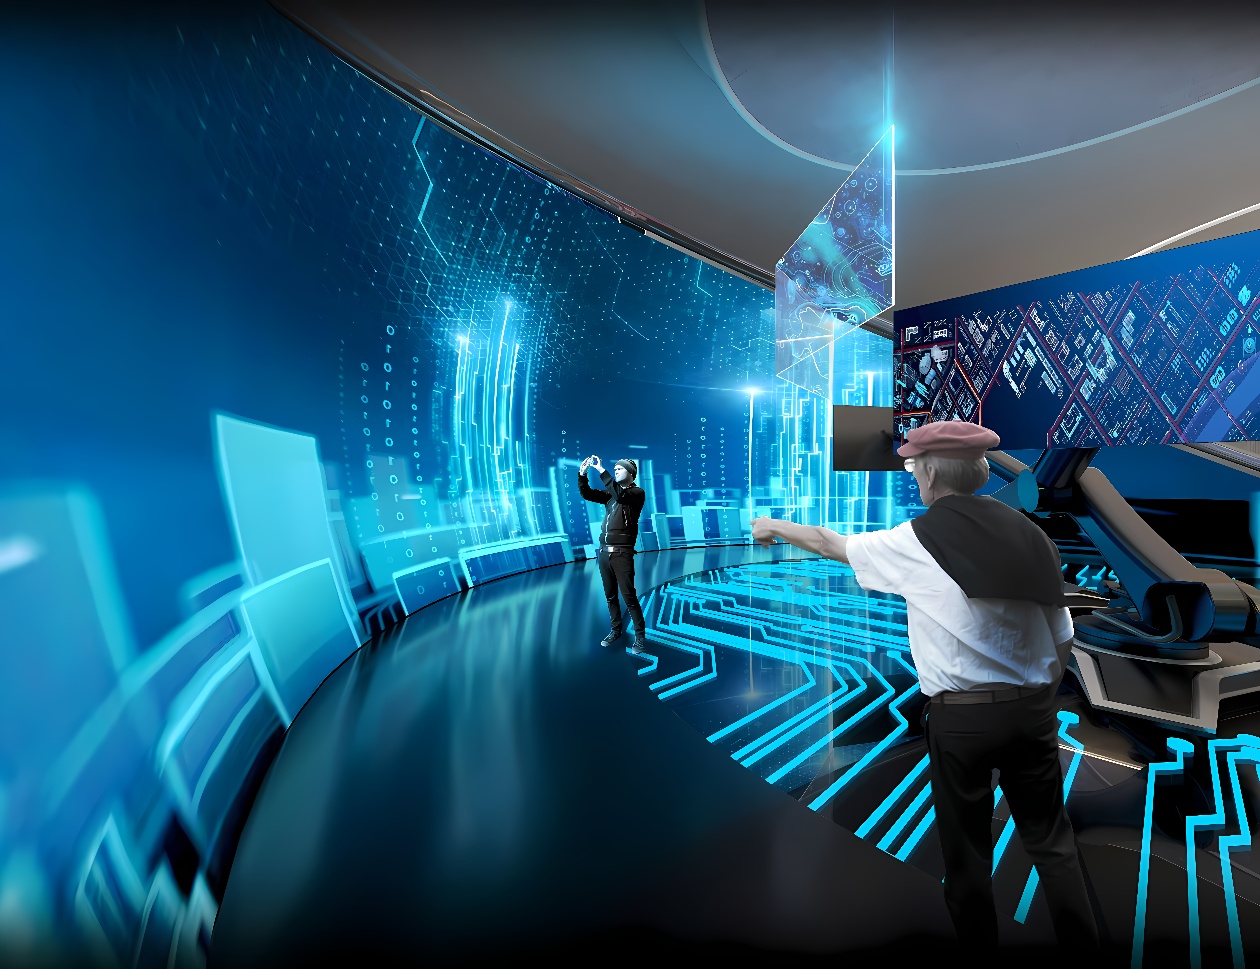 图片展示两人身处高科技虚拟现实室内，周围充满未来感数字图案和屏幕，他们正佩戴VR头盔体验虚拟世界。